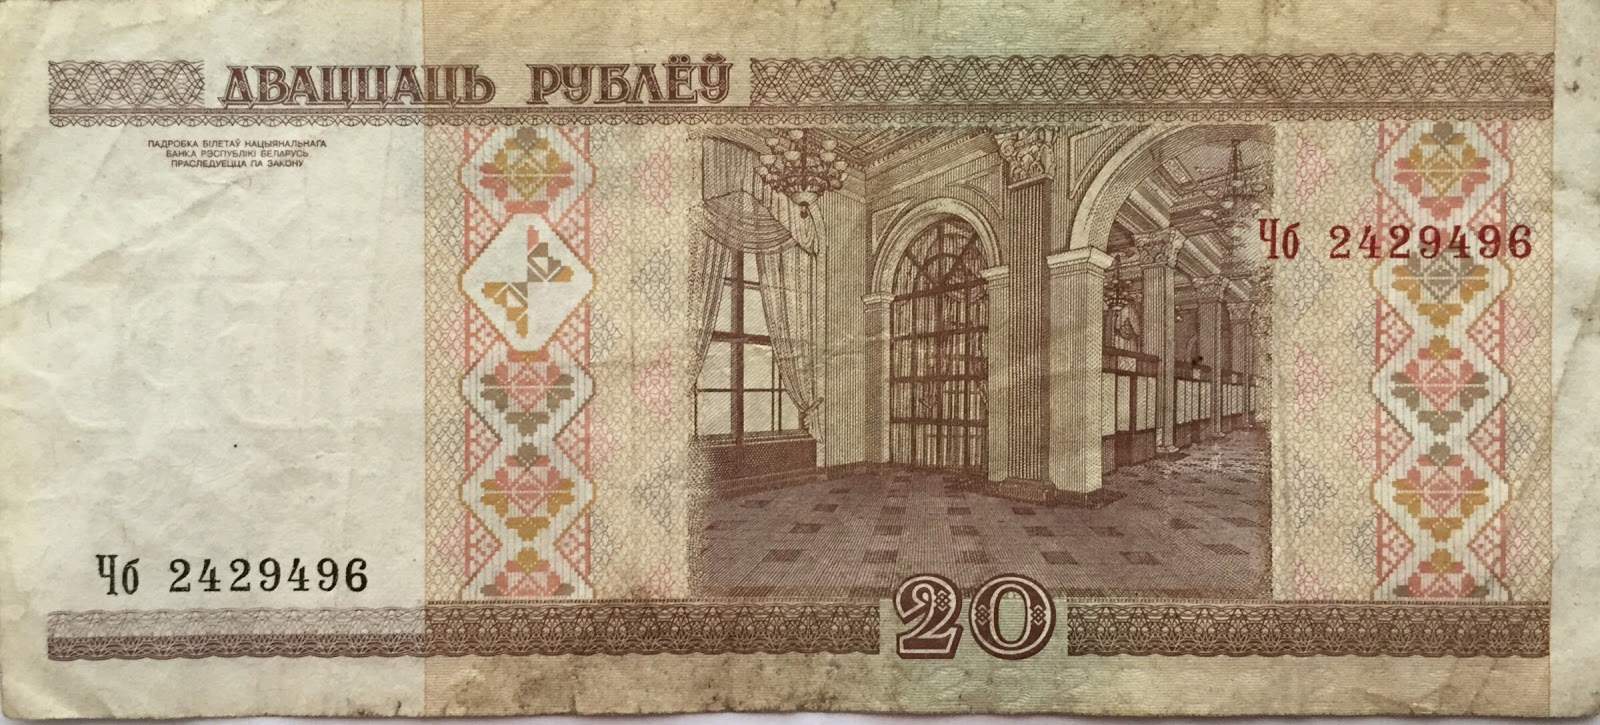 20 Белорусских рублей. 20 Рублей 2000 года. 20 000 Белорусских рублей. 20 Белорусских рублей фото.